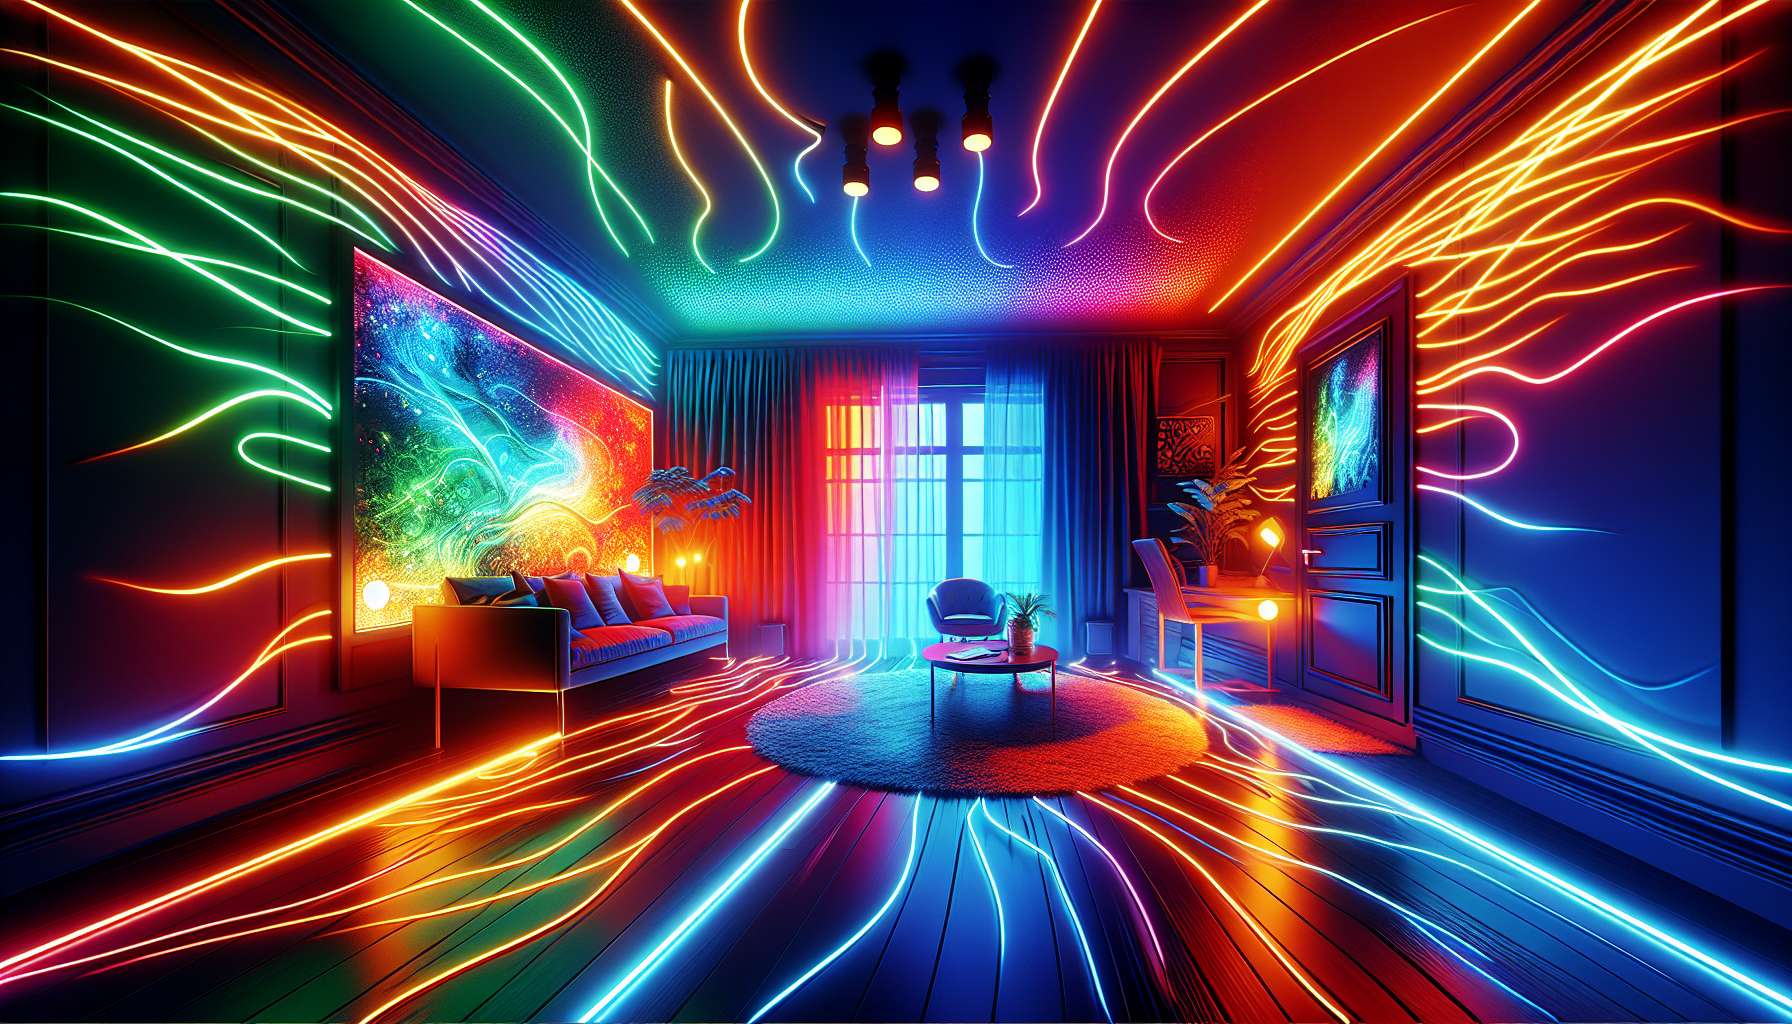 Colorful Dalattin LED Strip Lights for room décor